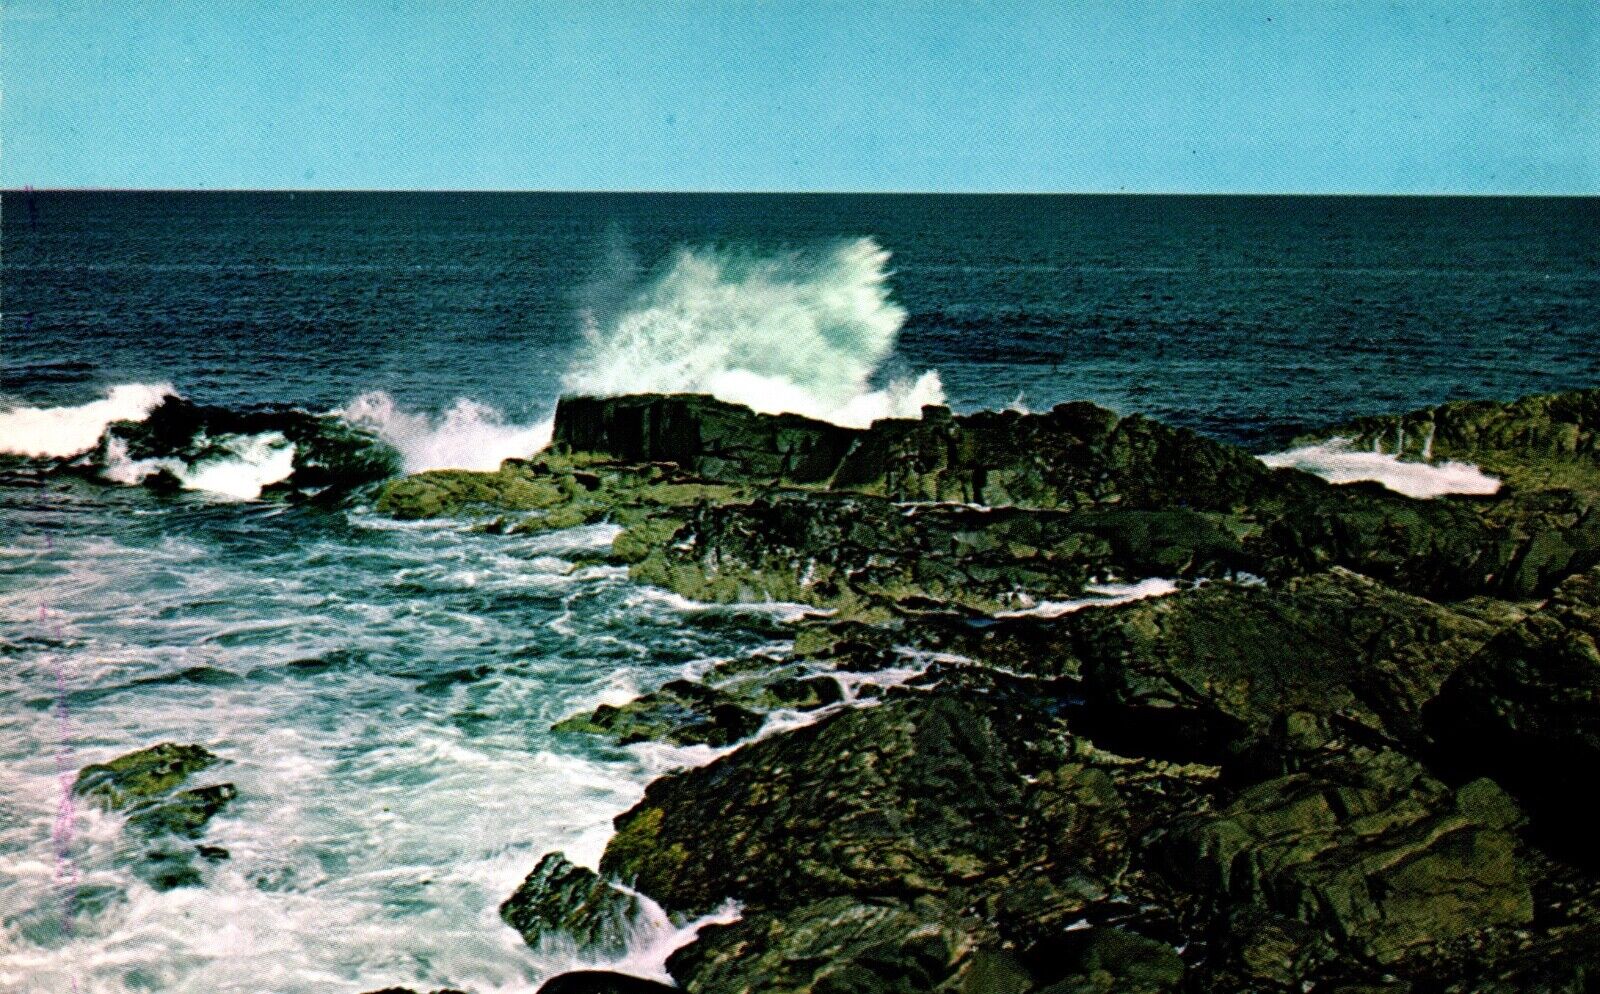 Postcard Calm Sea along means Rockbound Coast